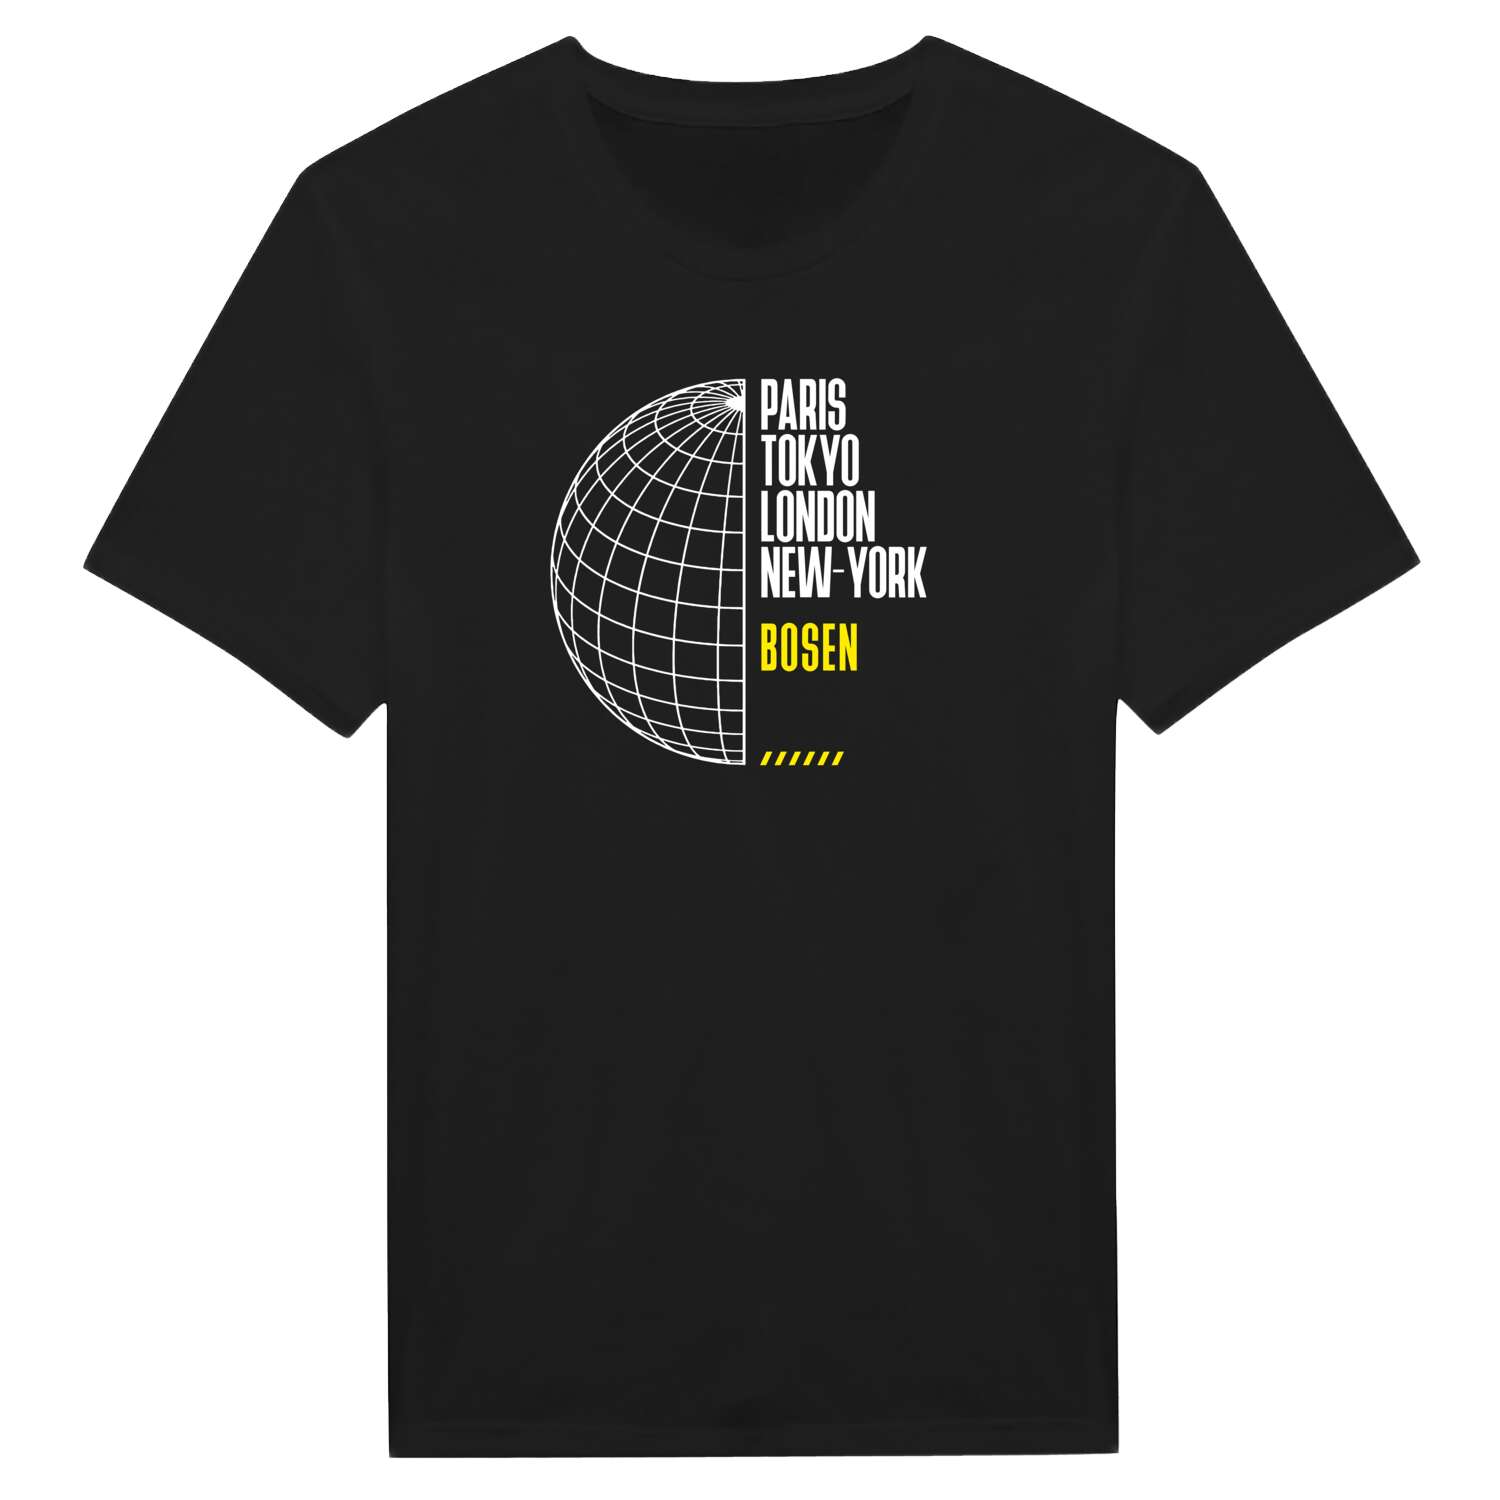 Bosen T-Shirt »Paris Tokyo London«